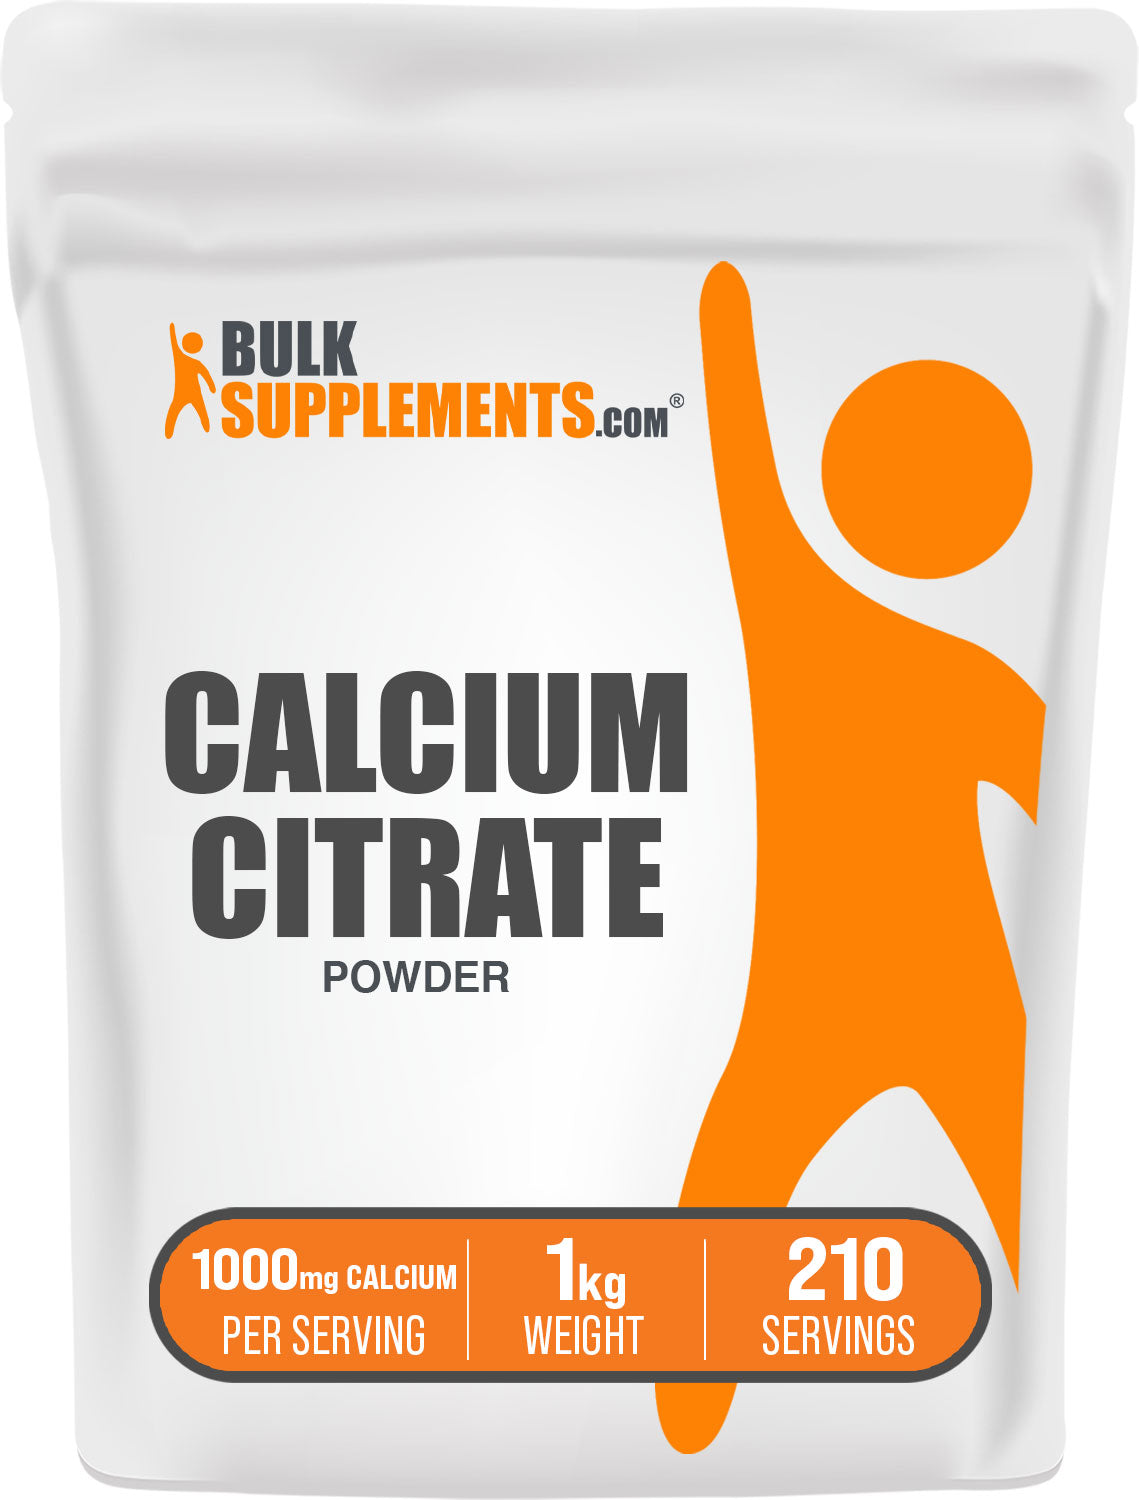 1kg calcium citrate supplement